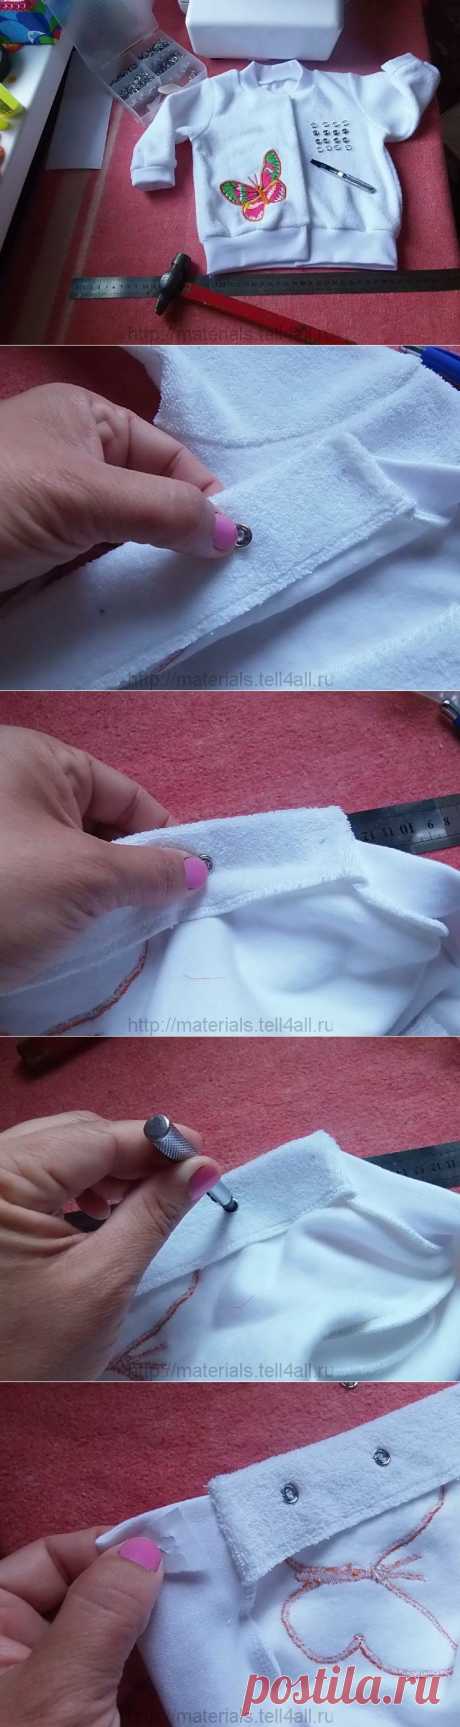 Как прикрепить кнопки к ткани